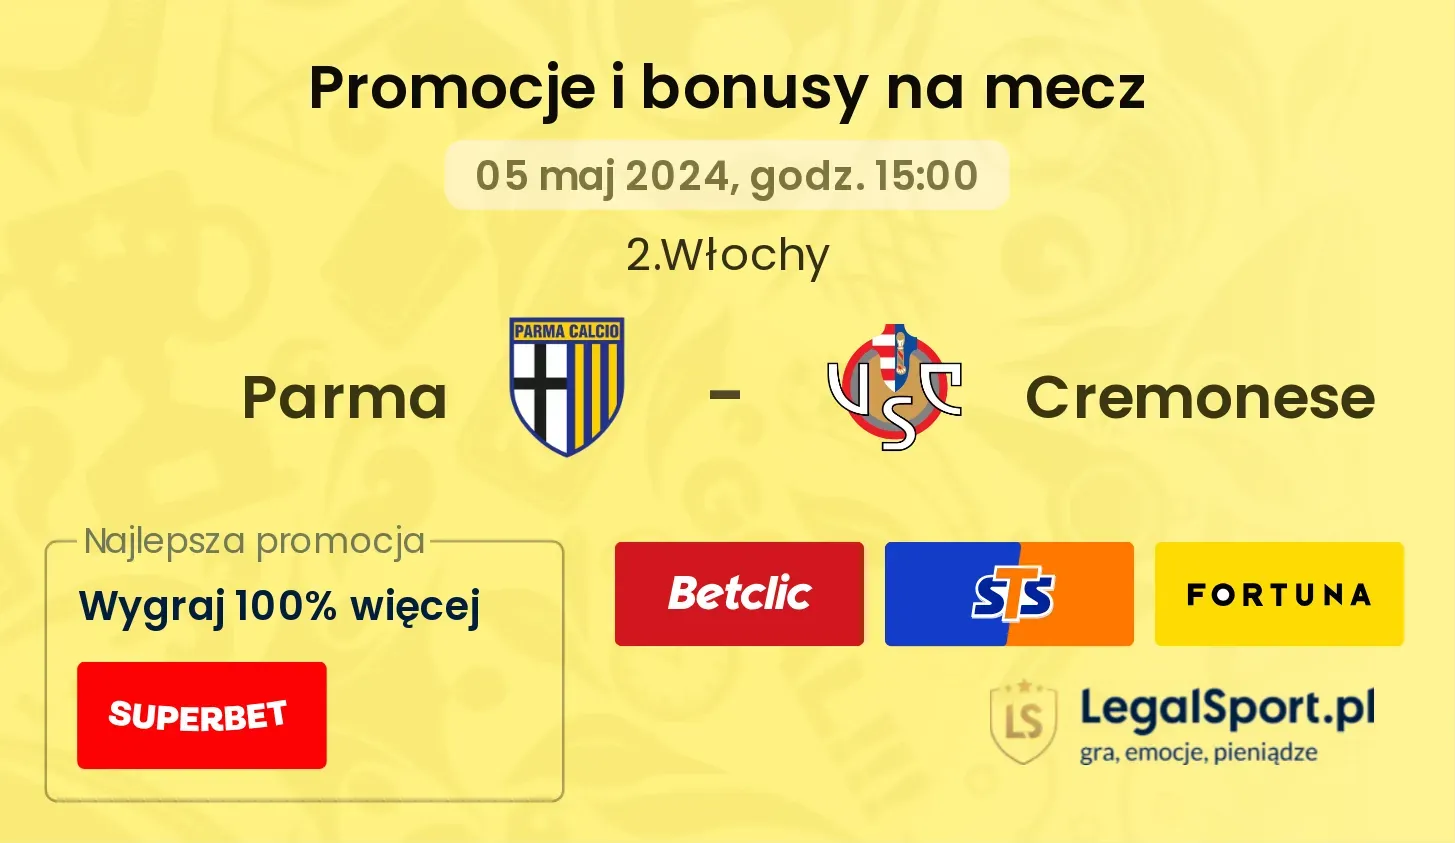 Parma - Cremonese promocje bonusy na mecz